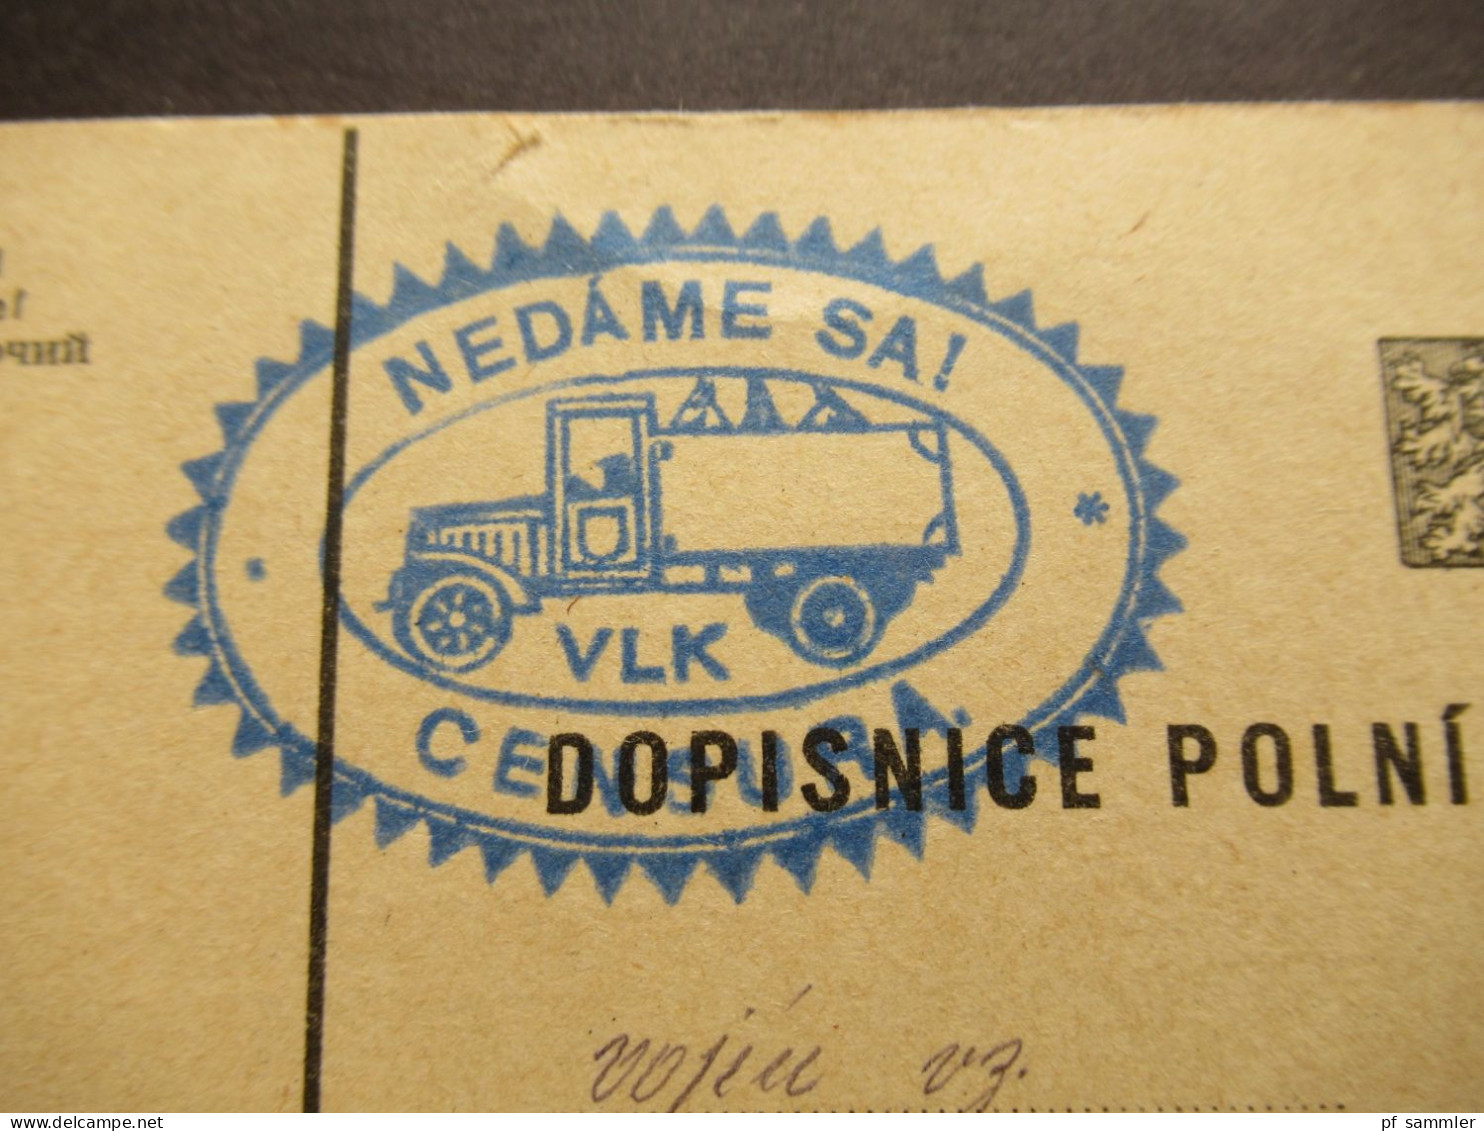 CSR Um 1938 Postkarte Blauer Stempel NEDAME SA! Censura / Zensurpost / Polni Posta - Covers & Documents